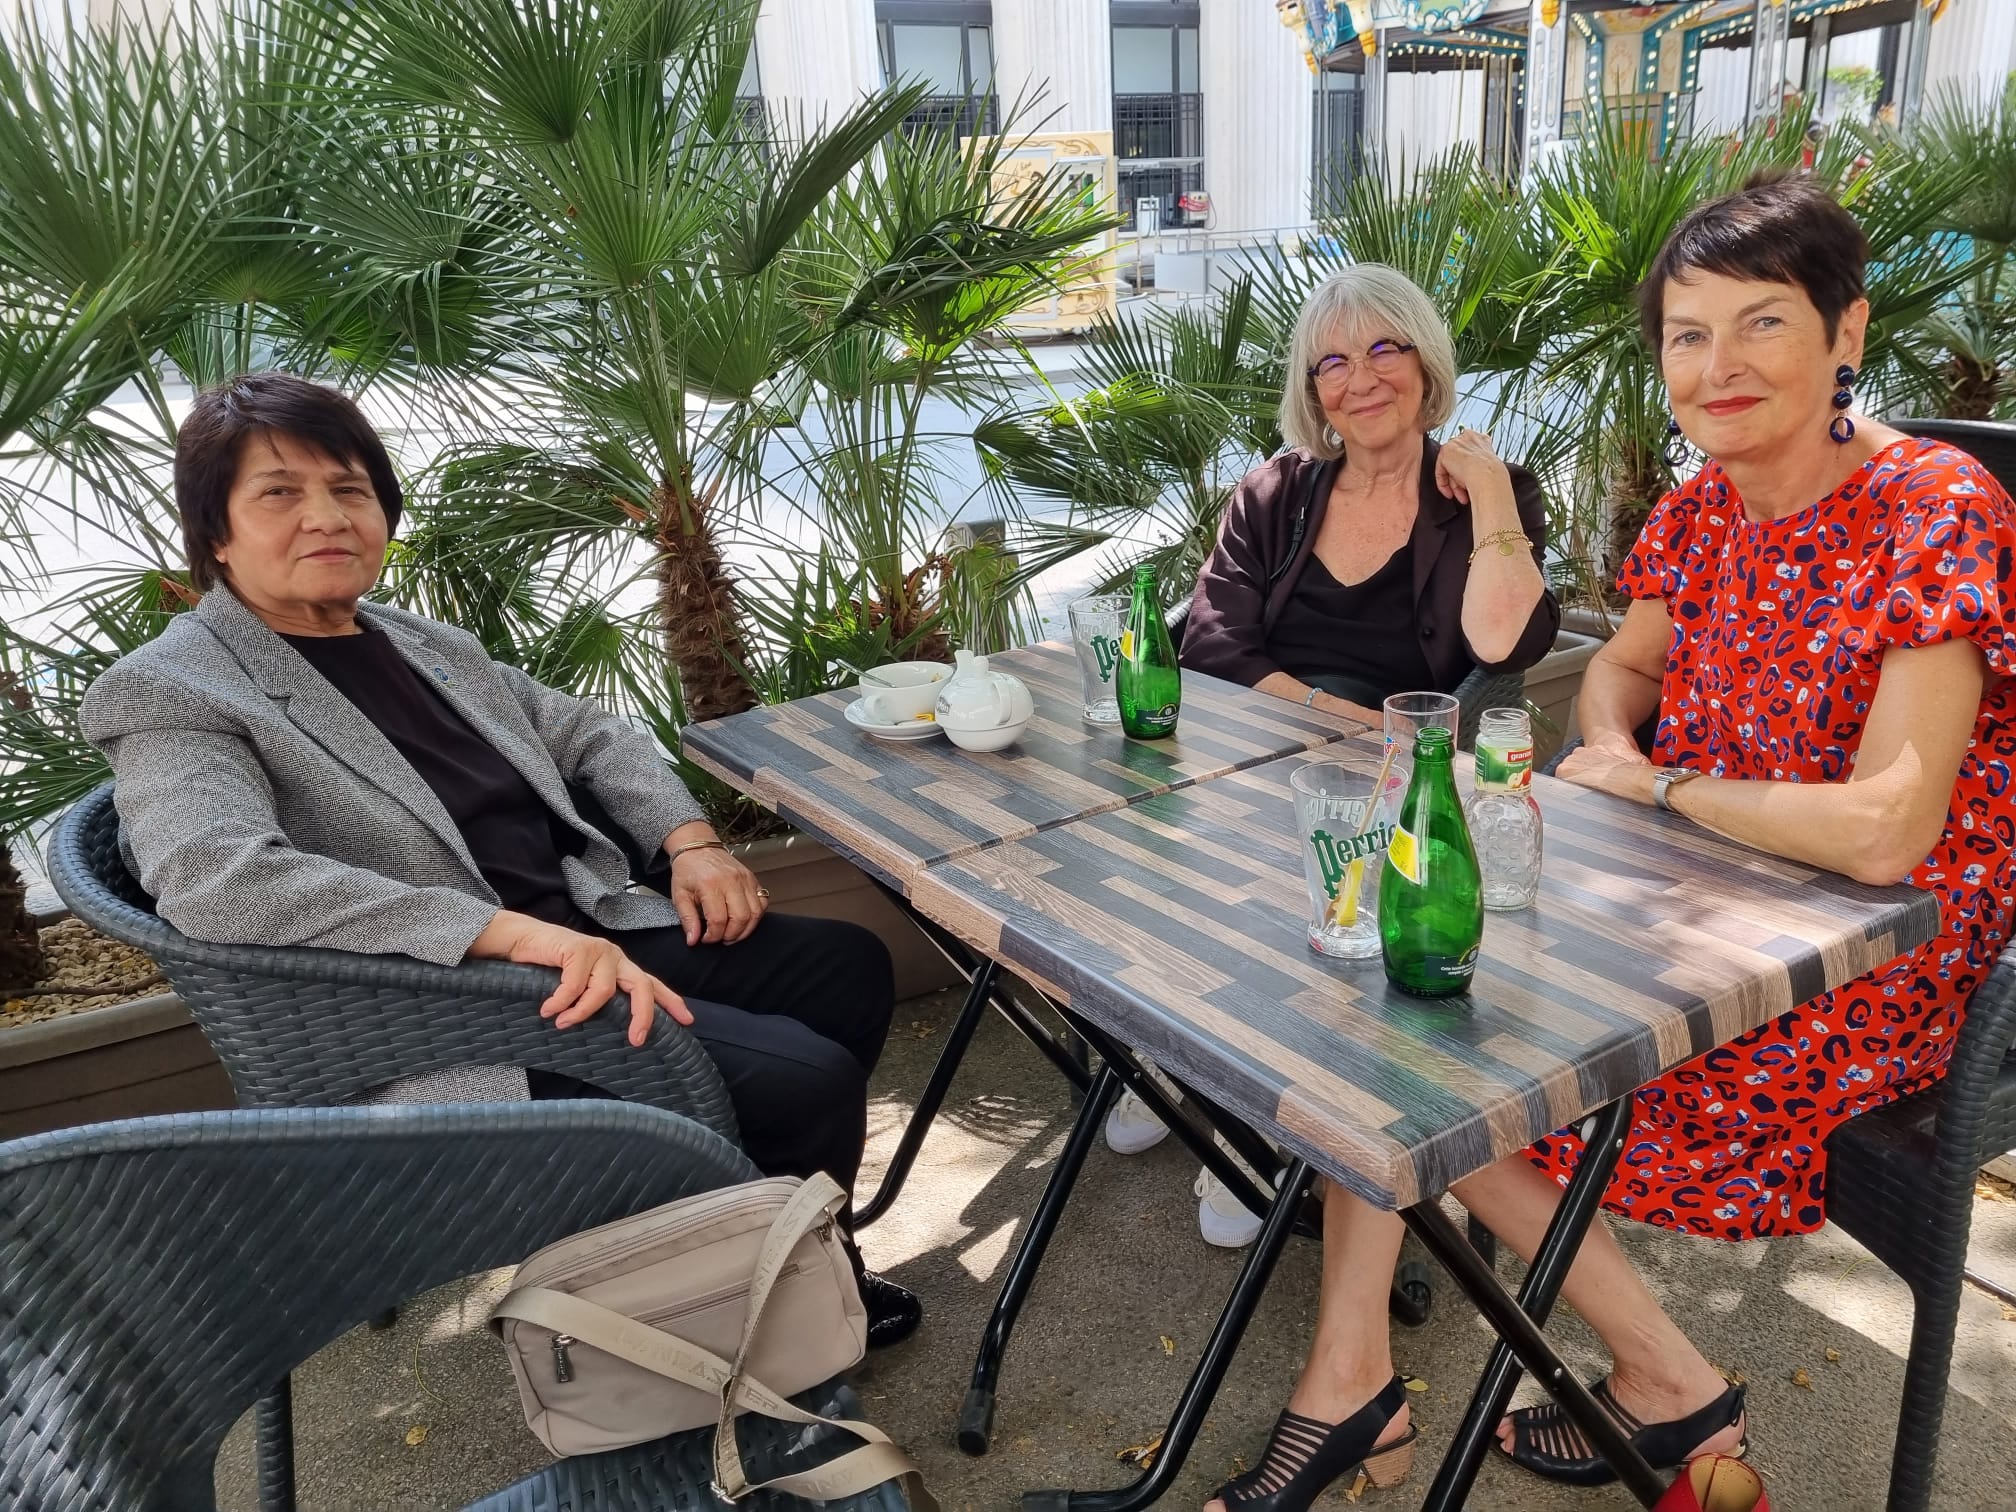 Villeurbanne le 28.06.23 avec Pascale Crozon, ancienne deputée et Thérèse Rabatel présidente de Femmes Cinéma Egalité de Lyon qui nous avaient invitées à une projection-conférence en 2022.